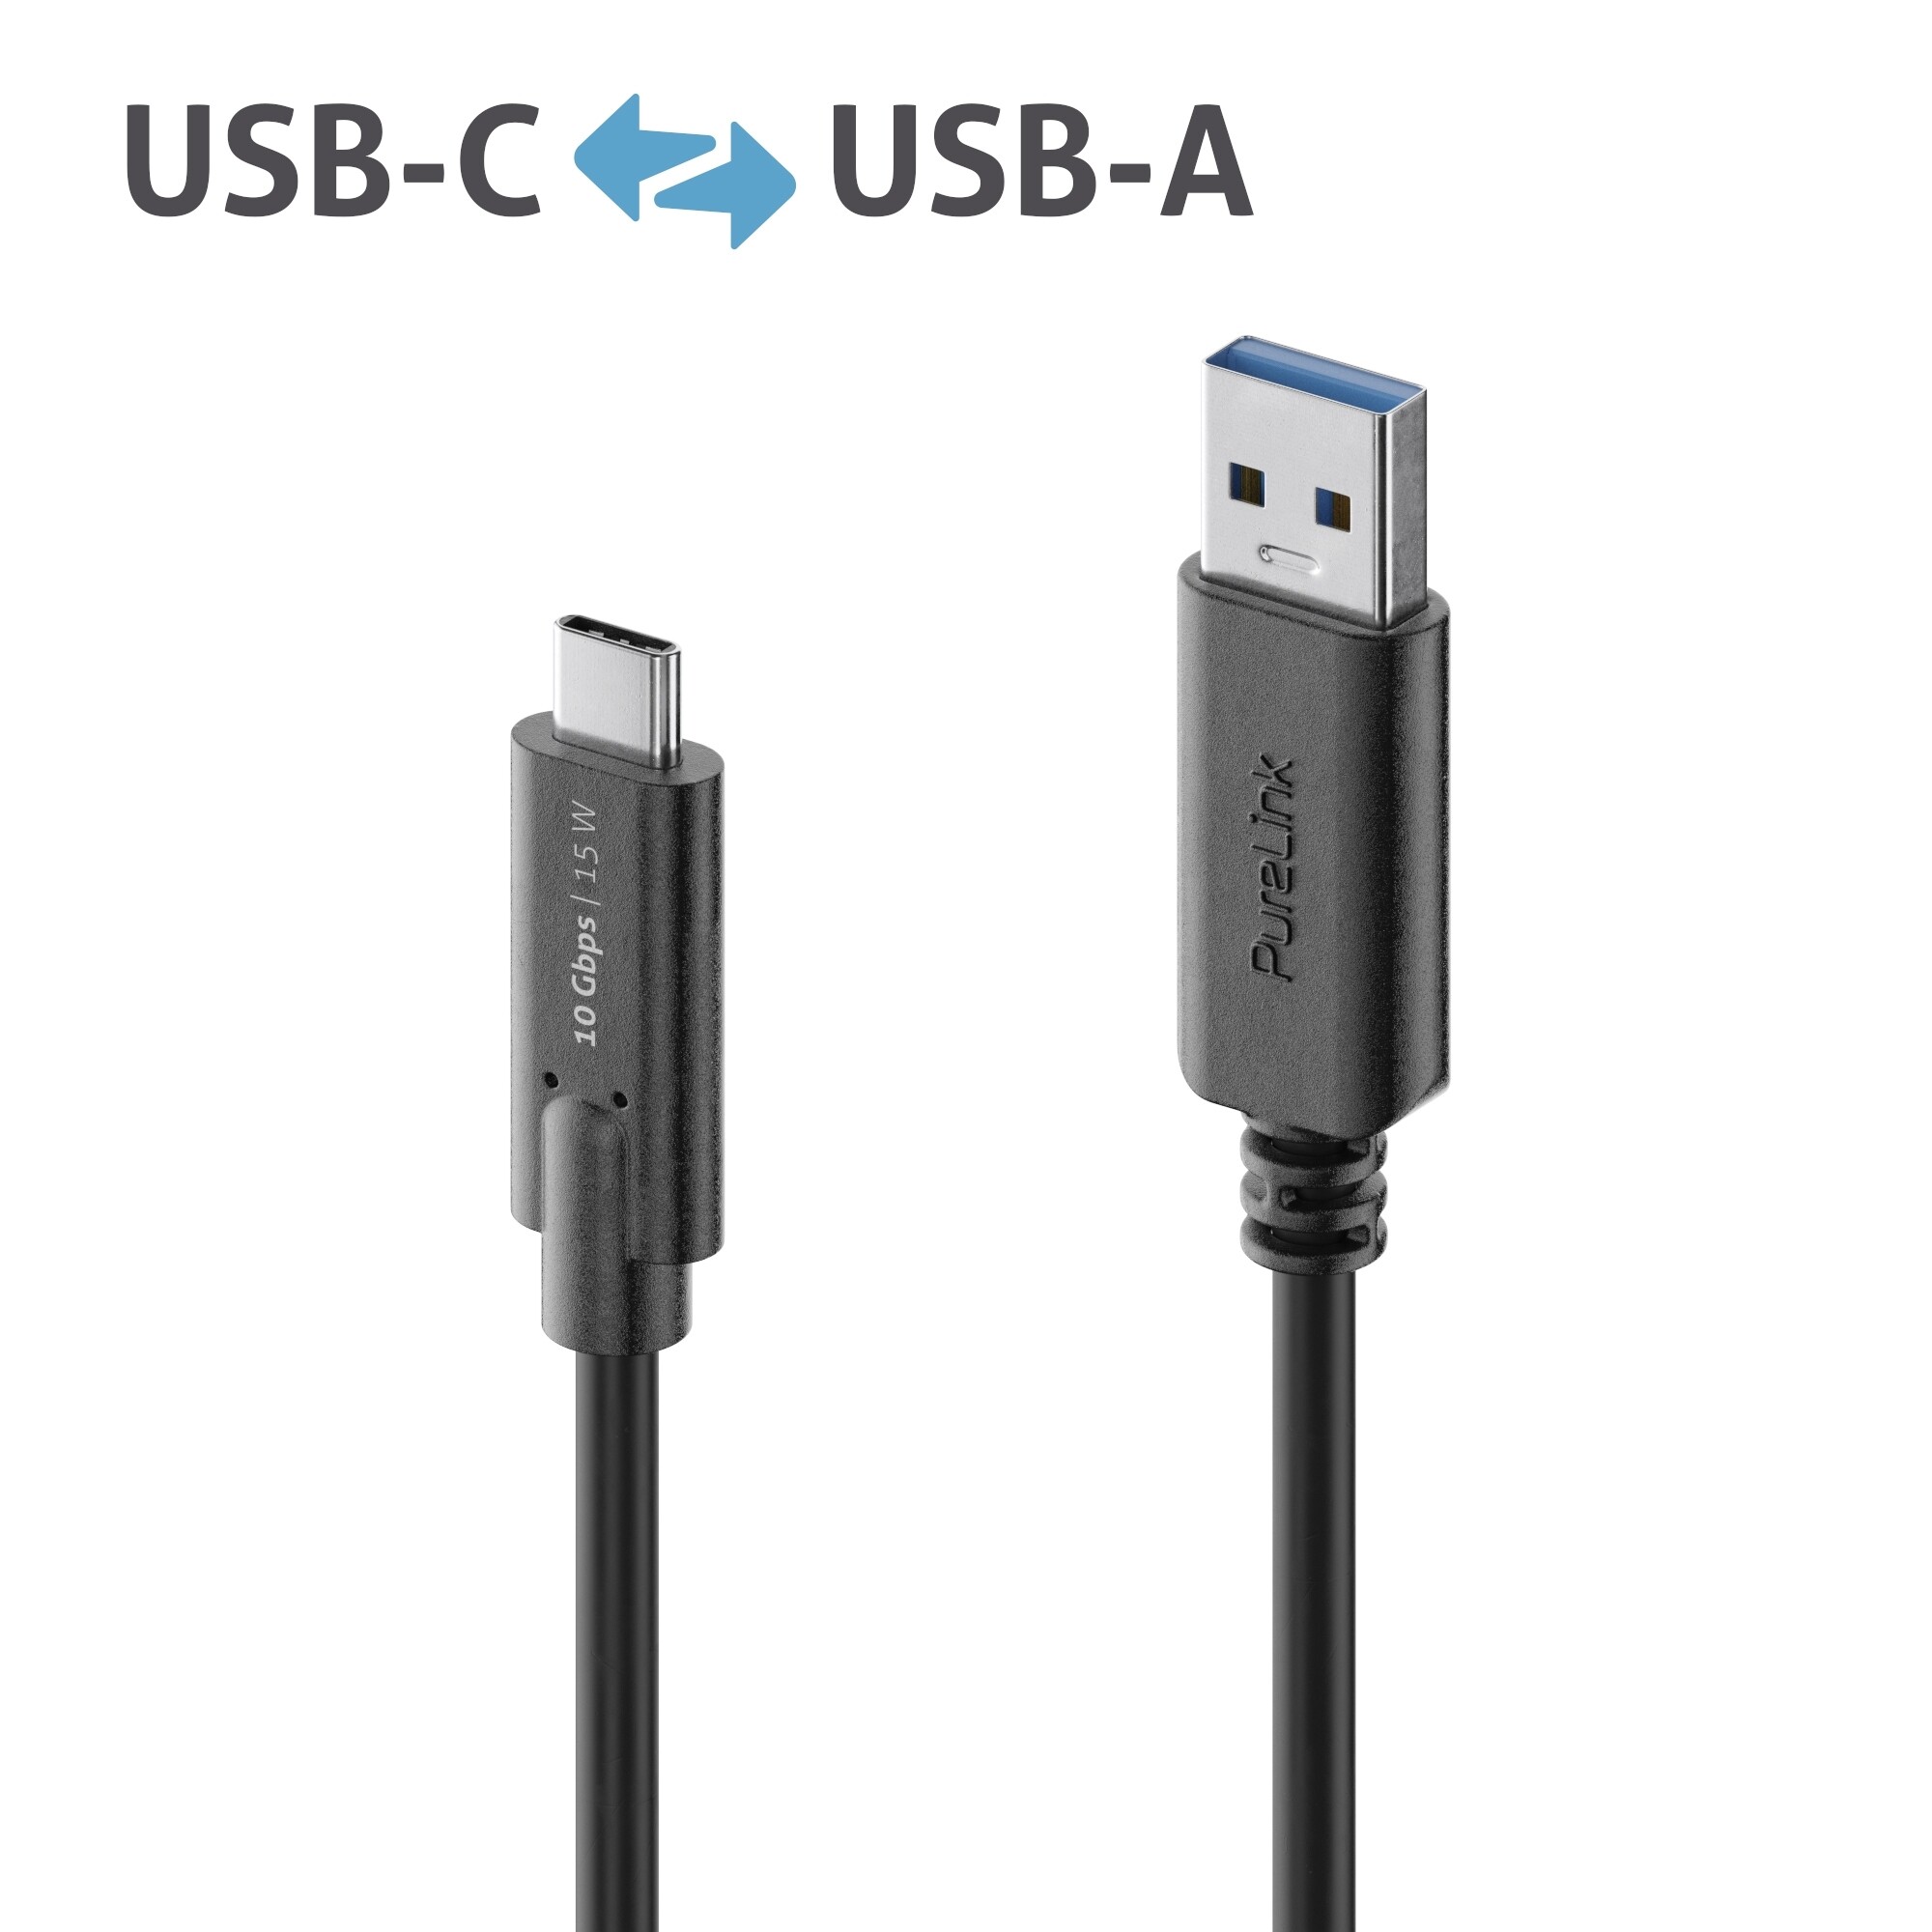 PURELINK iSeries Premium - USB-Kabel - USB-C (M) bis USB Typ A (M) - USB 3.1 Gen 2 - 50 cm - rund -